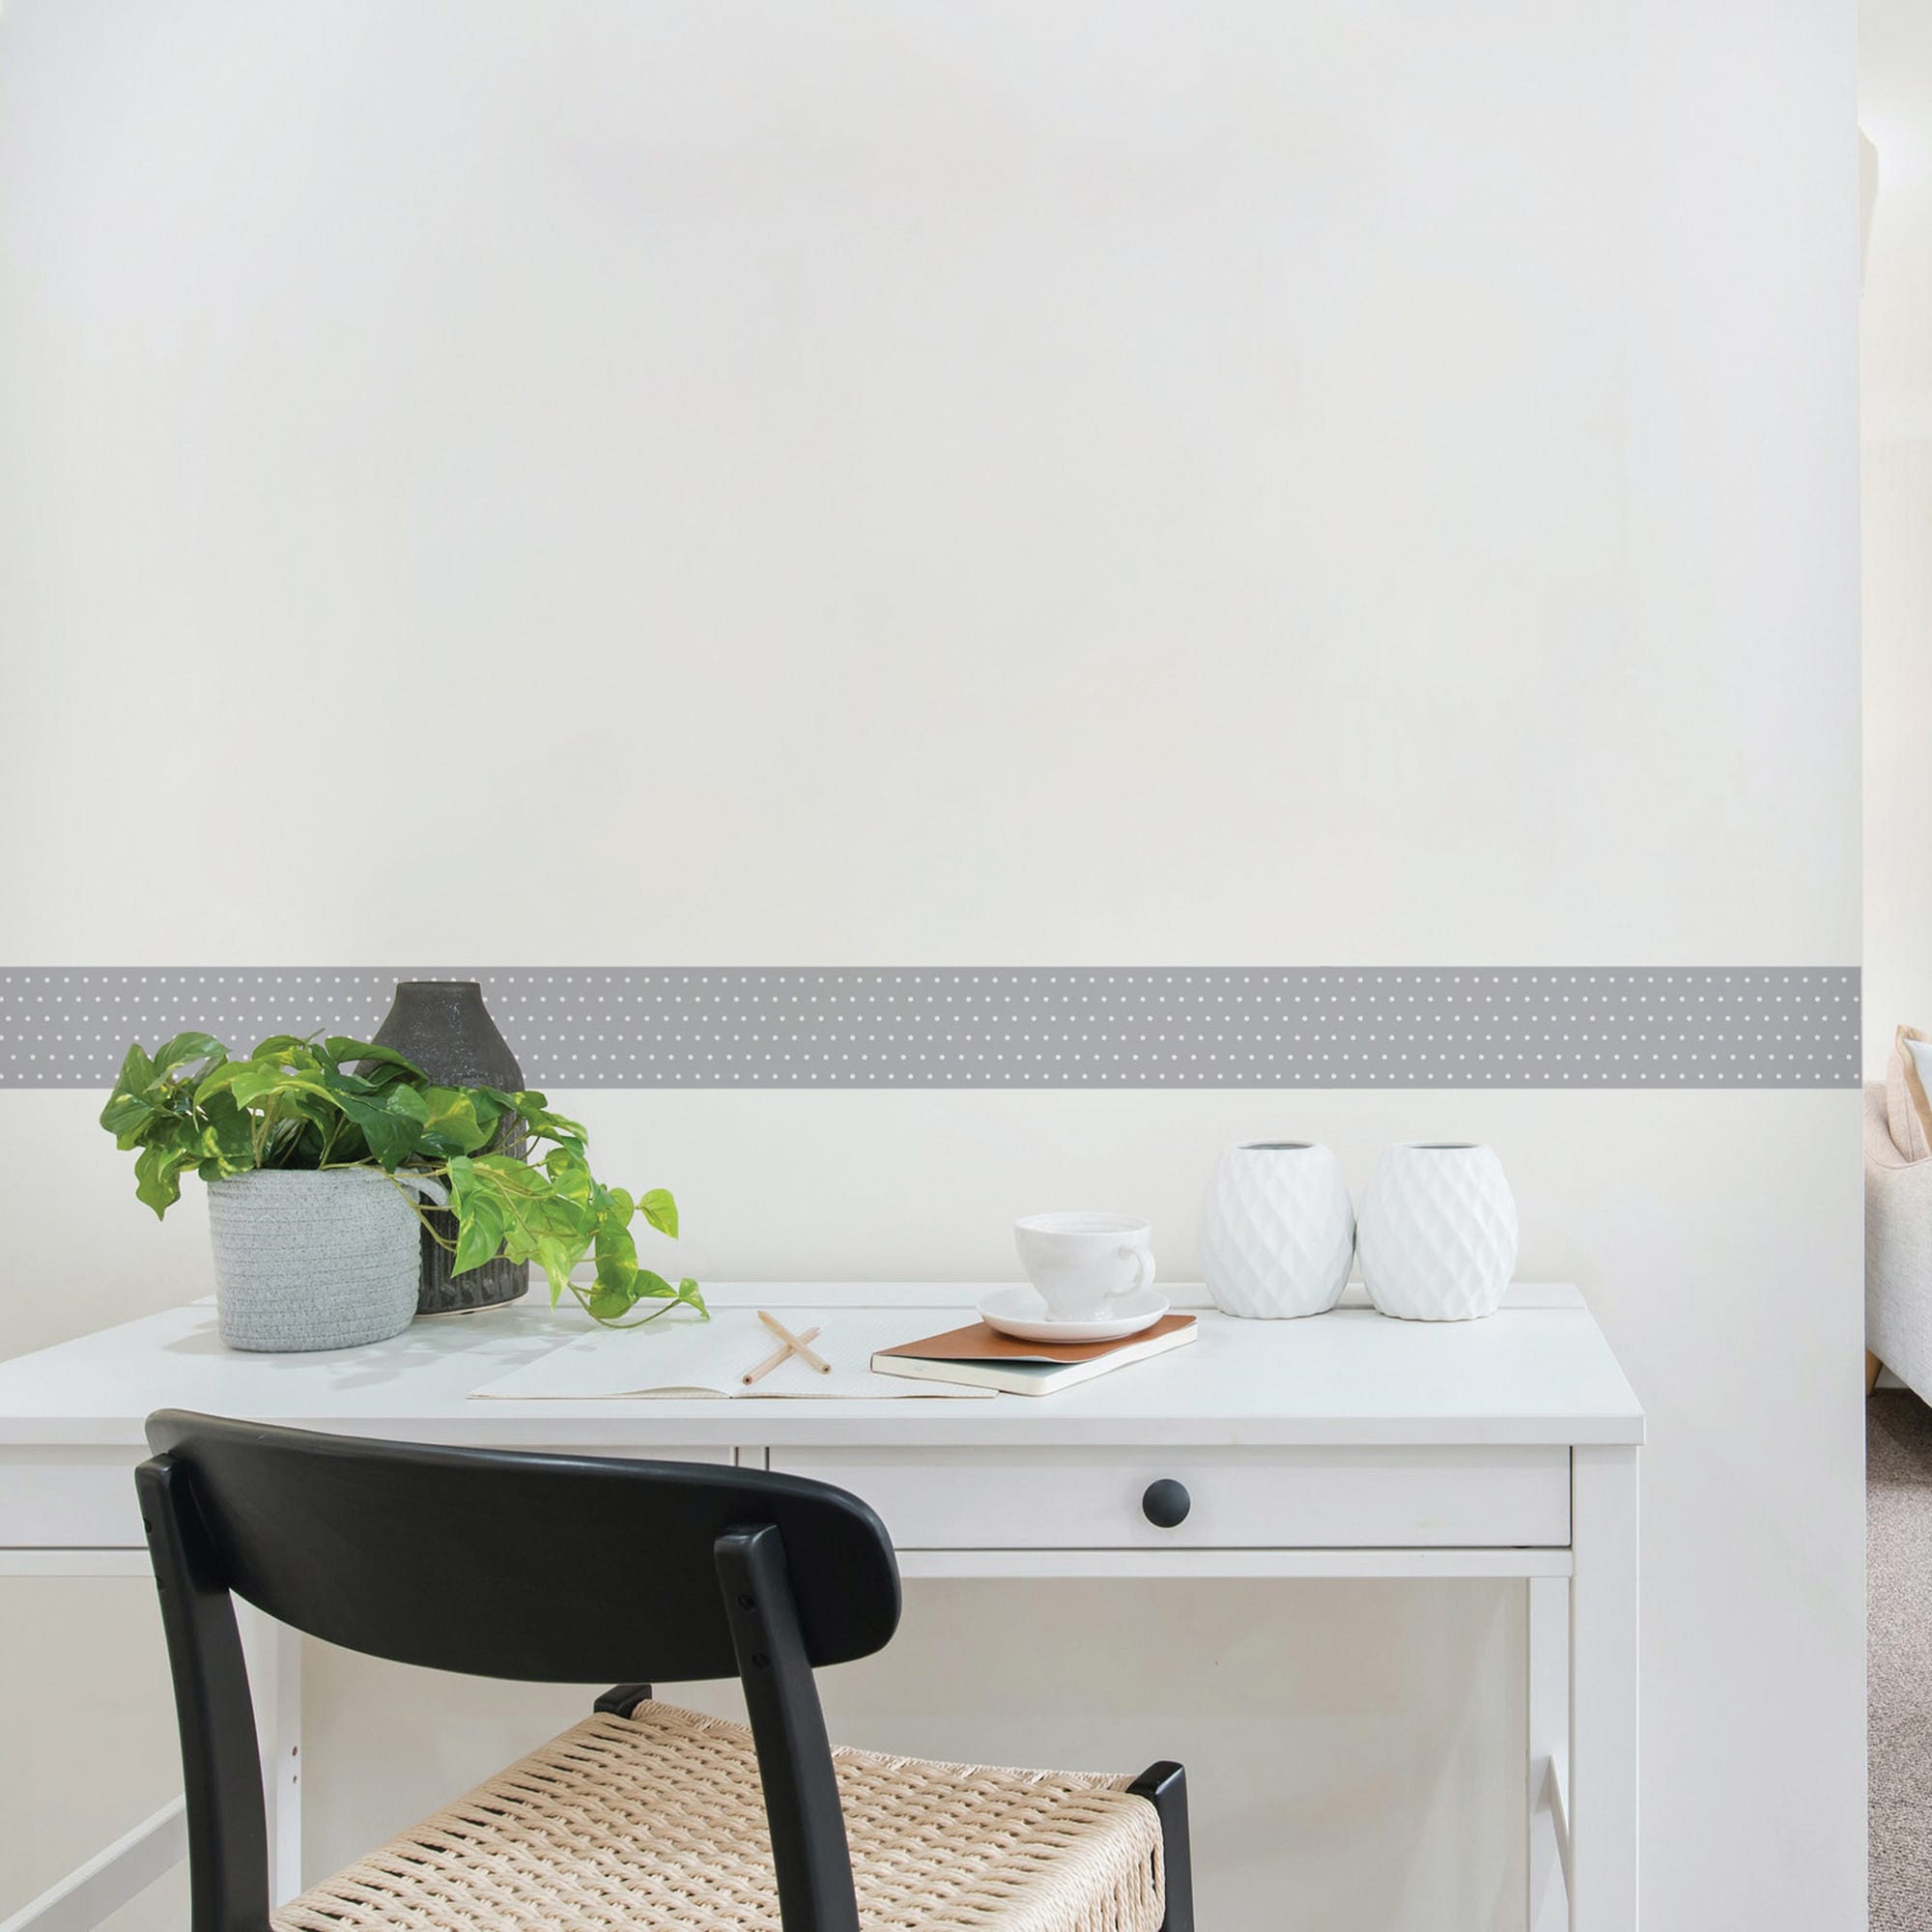 Dostear Frise Papier Peints Salon Film Autocollant Vinyle Adhesif Meuble  Collant Decoratif Mural Decoration Cuisine Grain de bois blanc 61 X  500cm(24.02 X 196.85 pouces) : : Bricolage